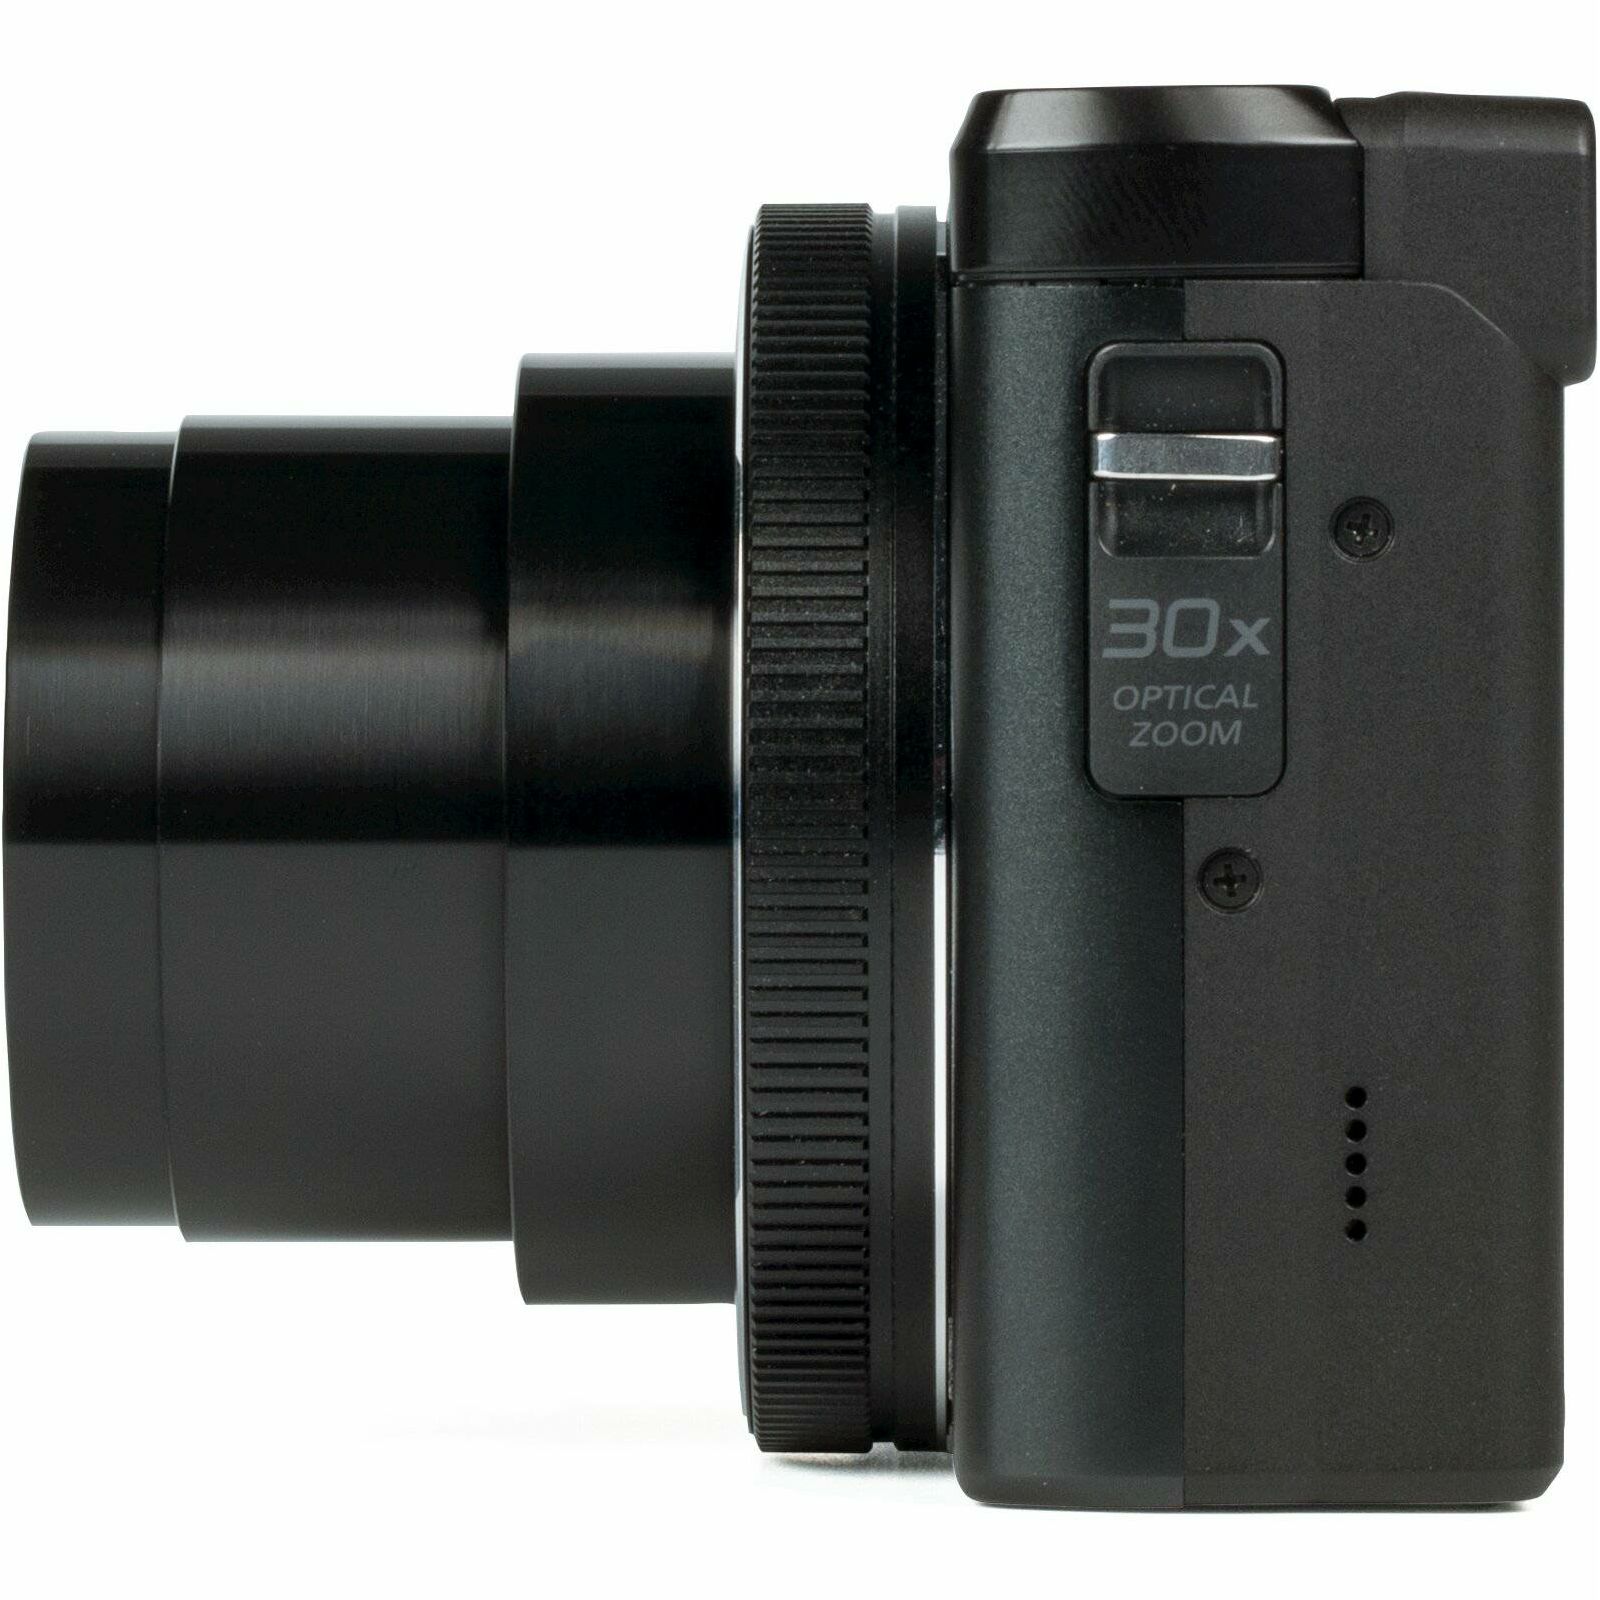 Panasonic Lumix DMC-TZ81 Black 4K Digitalni kompaktni fotoaparat (DC-FZ81EP-K)